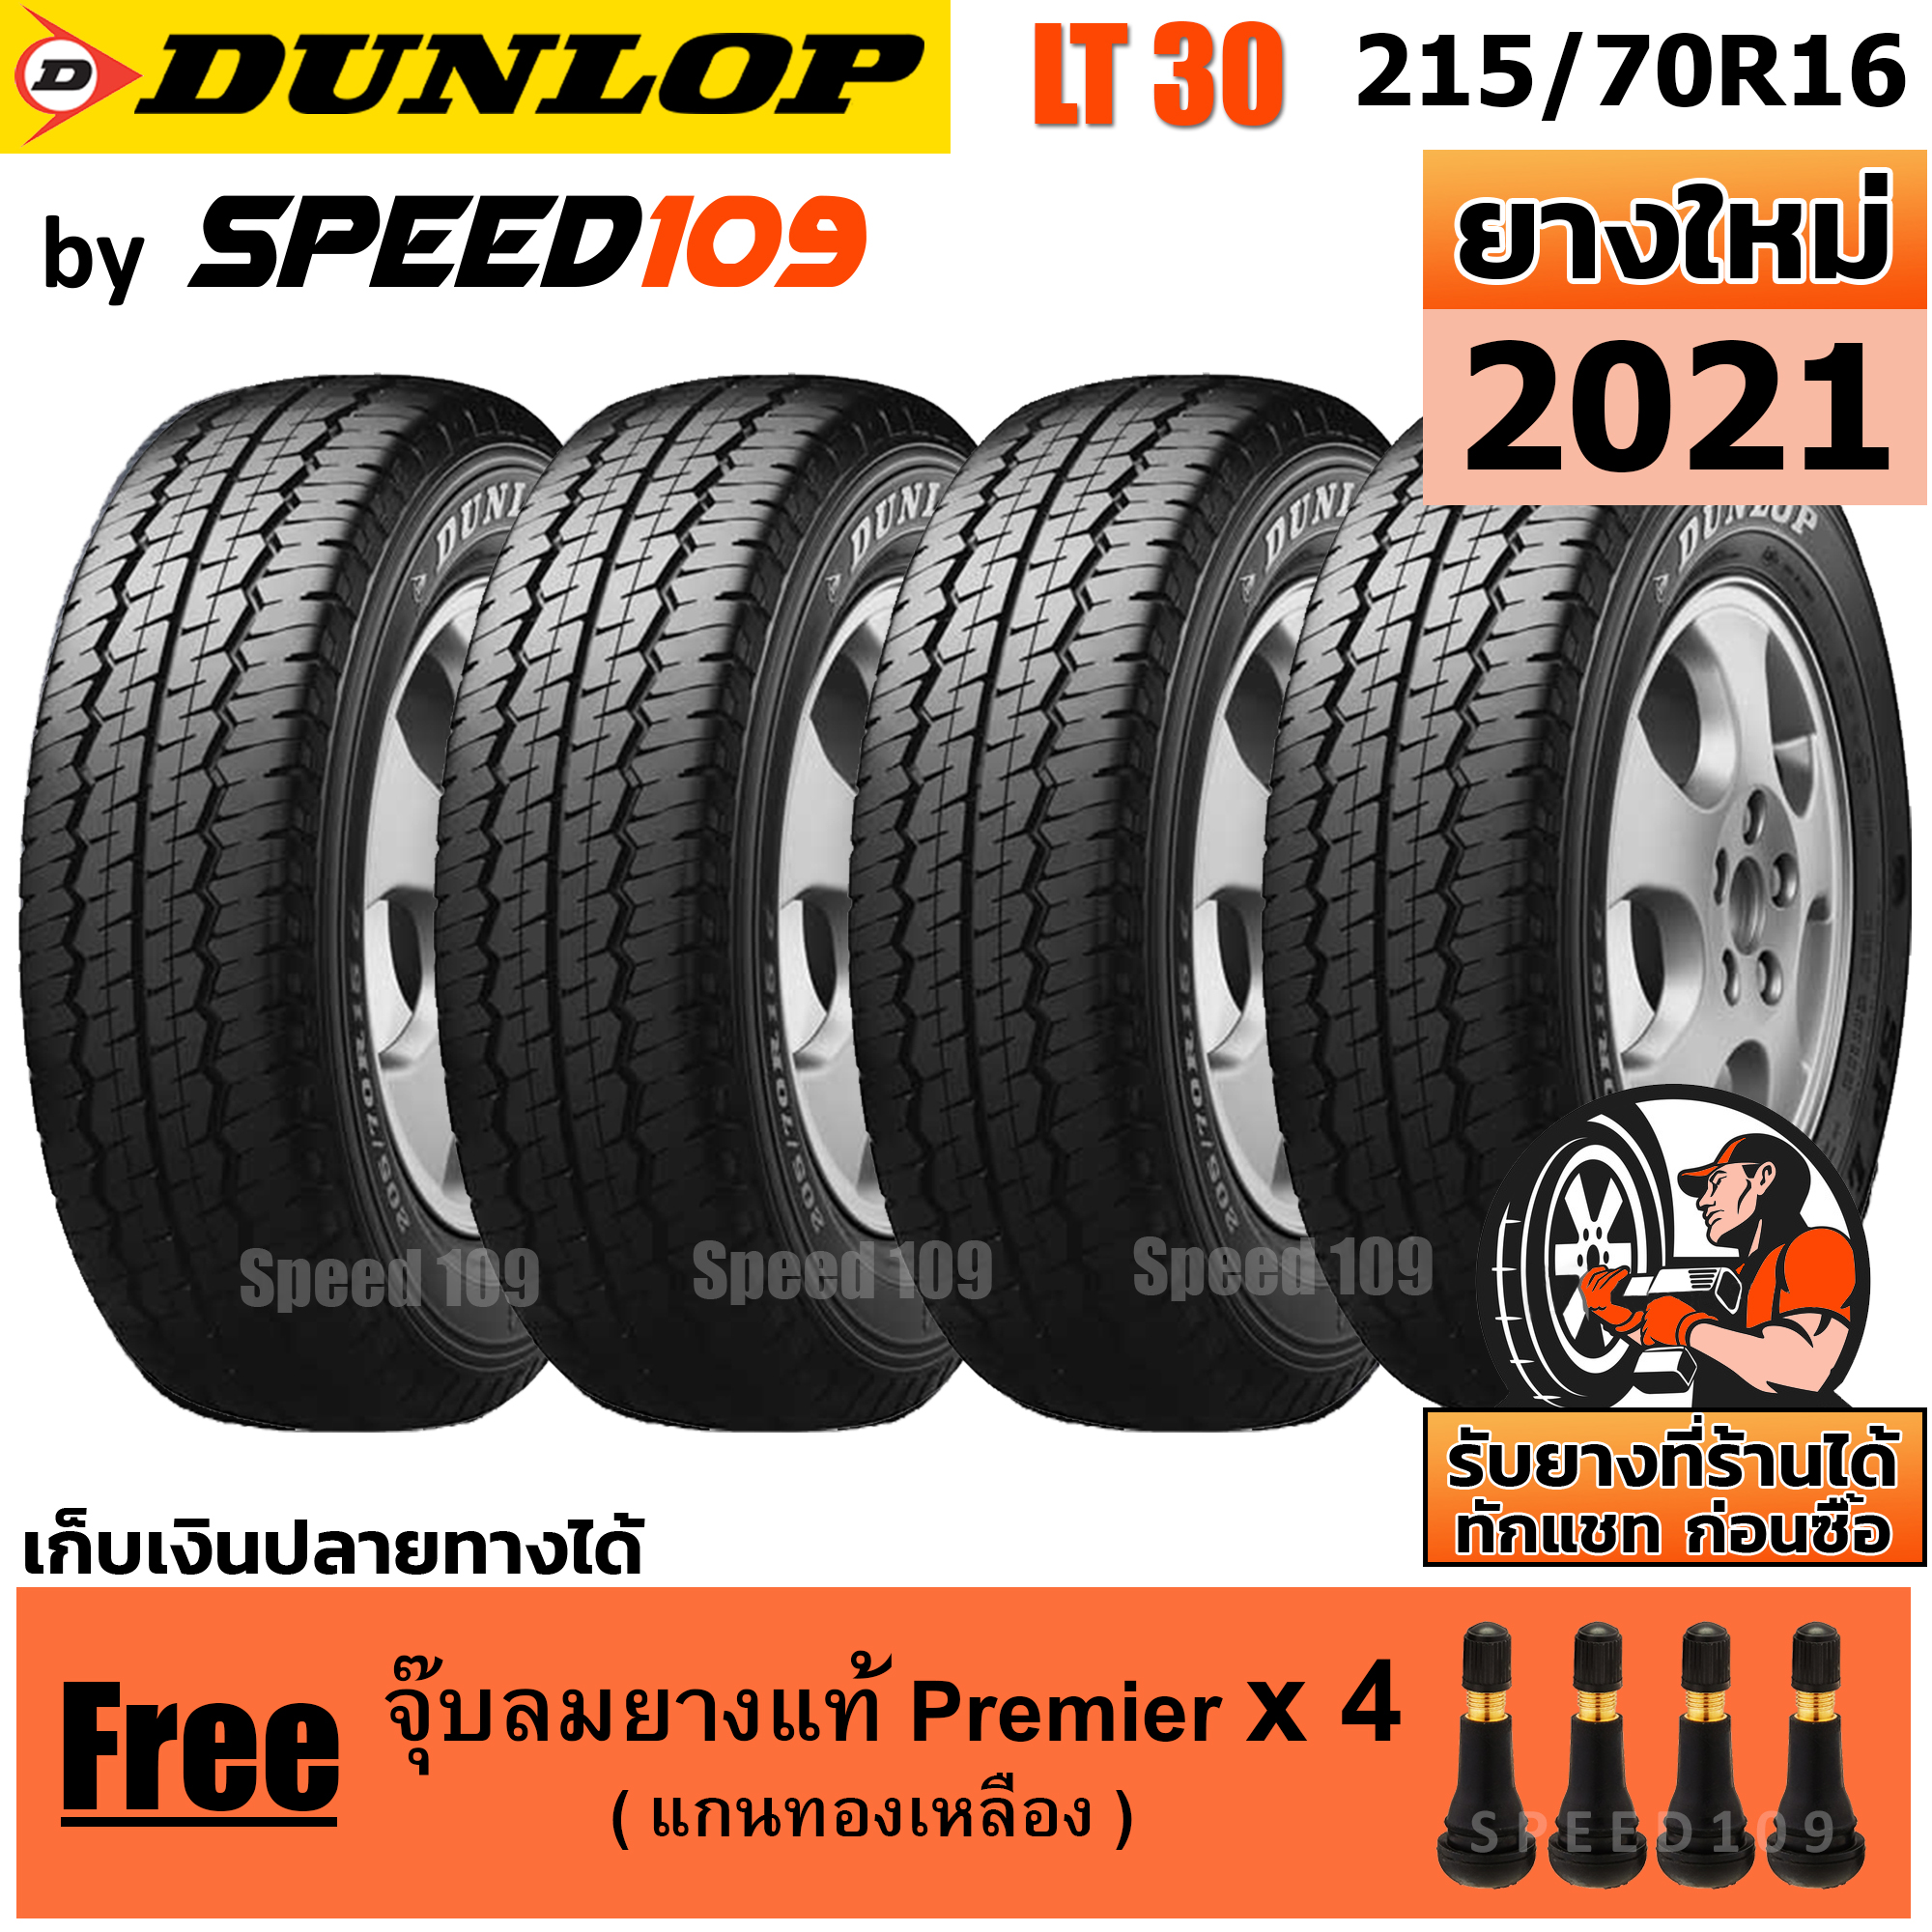 DUNLOP ยางรถยนต์ ขอบ 16 ขนาด 215/70R16 รุ่น SP LT30 - 4 เส้น (ปี 2021)